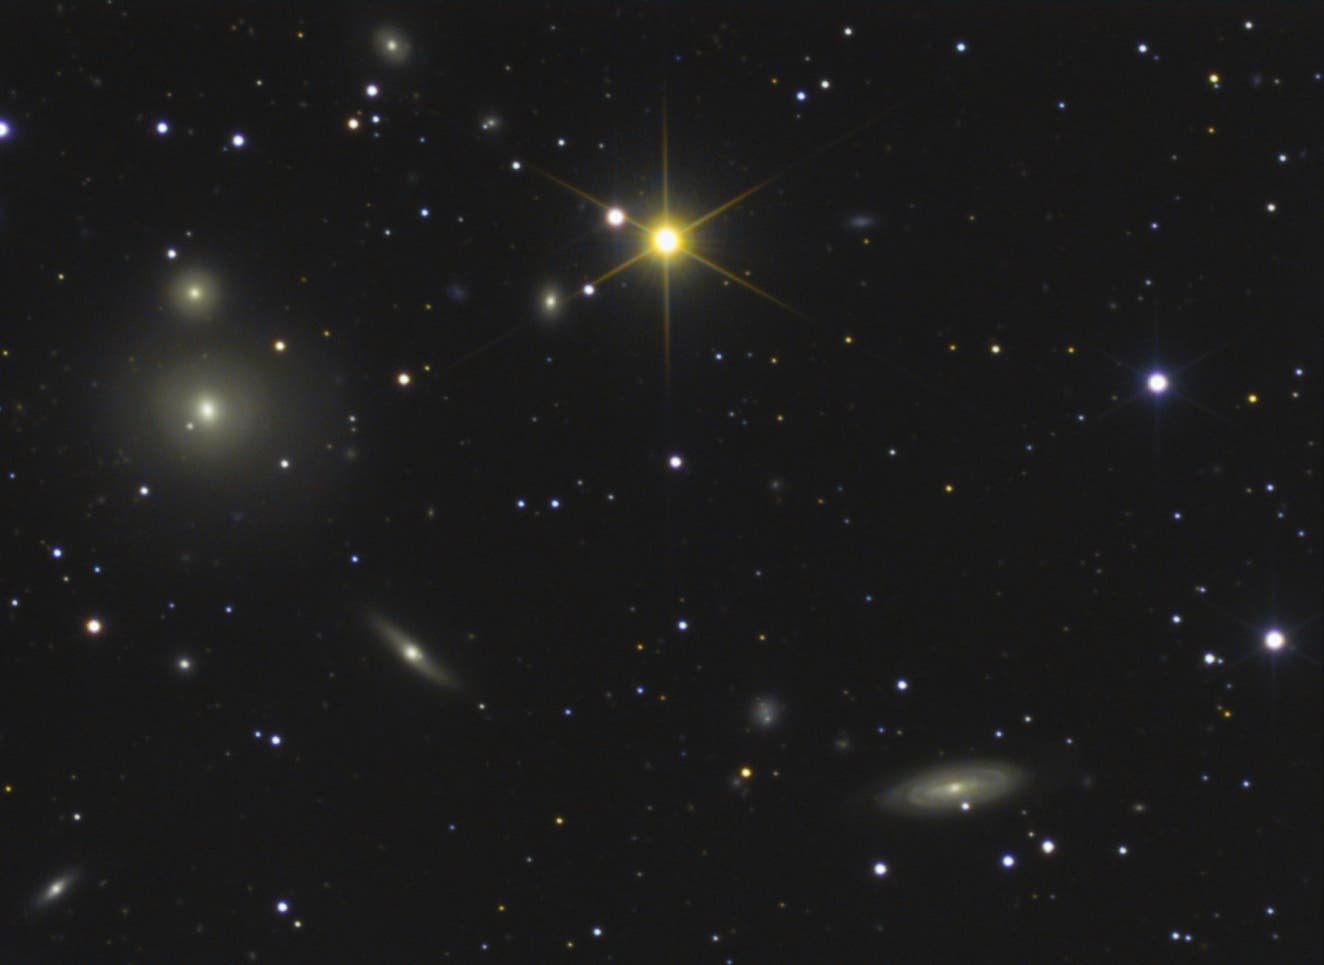 Arp 229  (NGC 507/508)